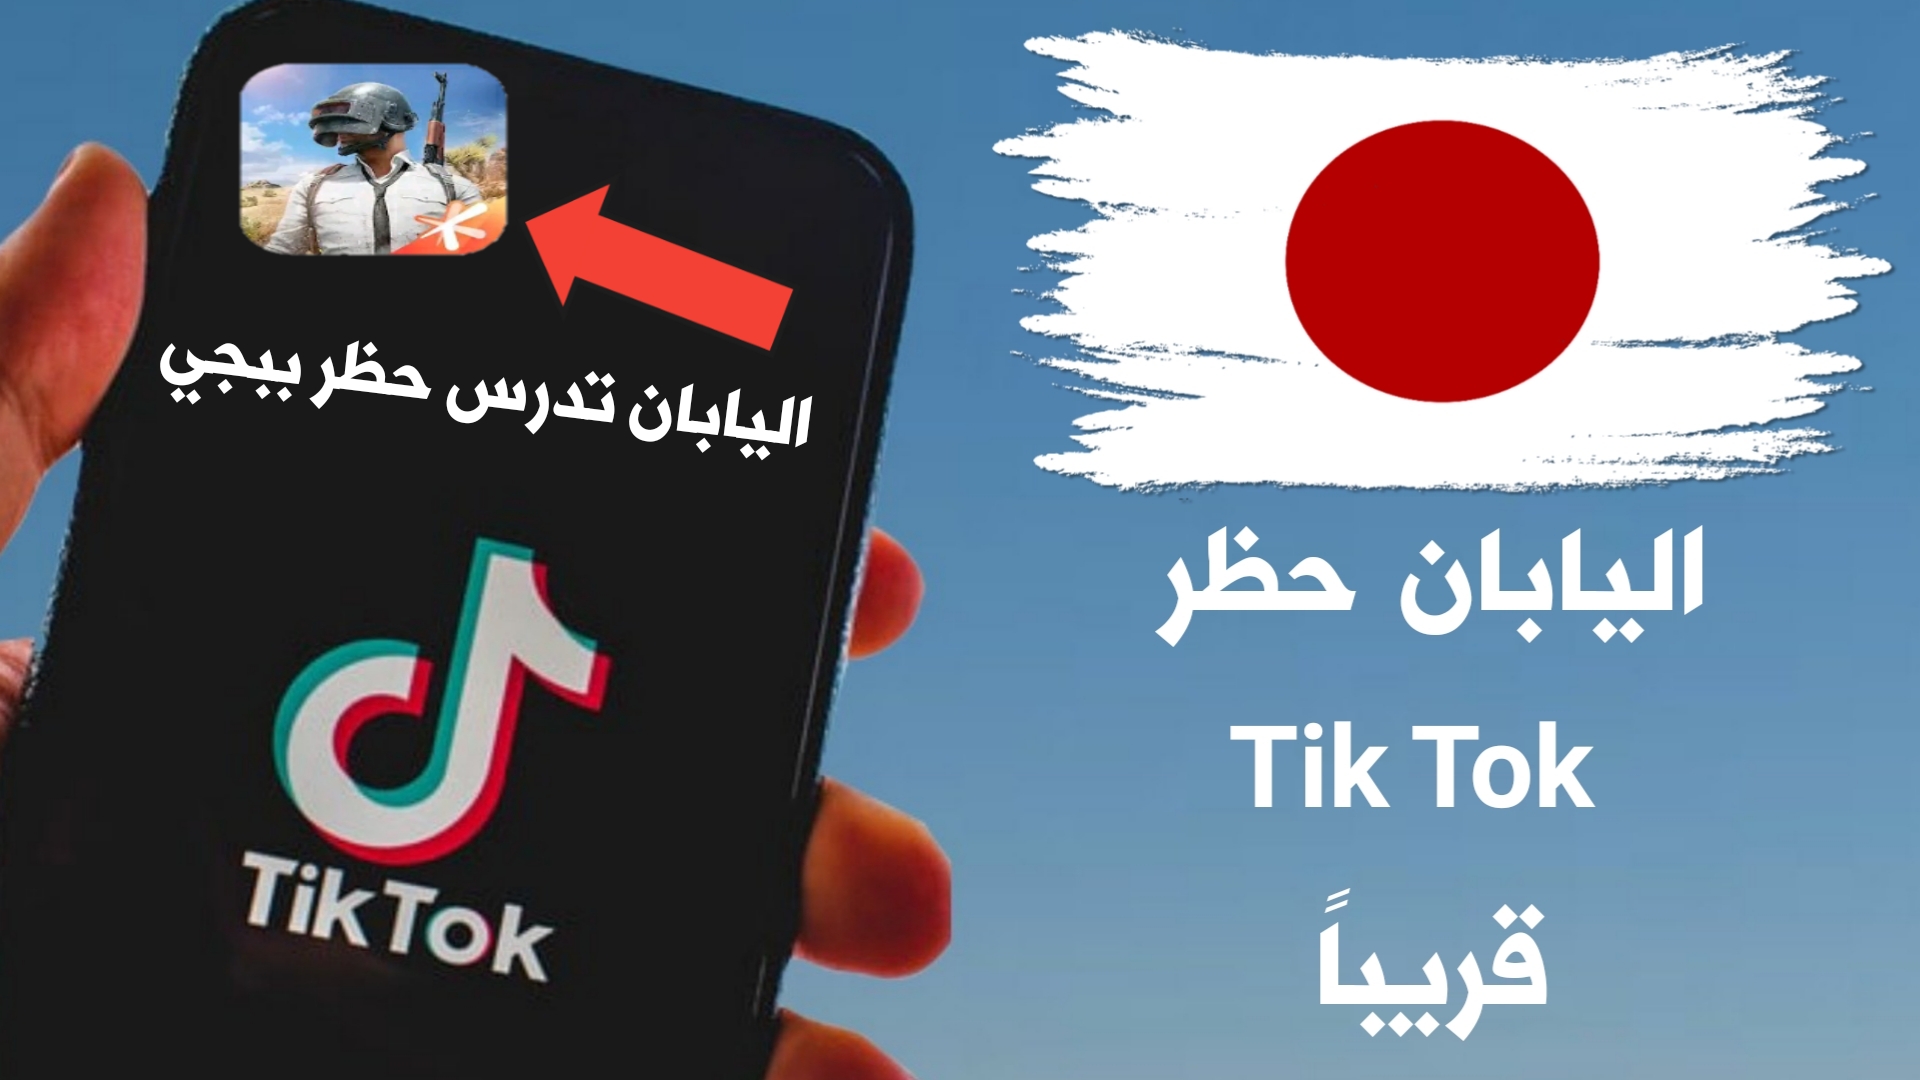 اليابان تدرس حظر Tik Tok وتطبيقات صينية أخرى منها Pubg Mobile كما فعلت الهند وأمريكا !